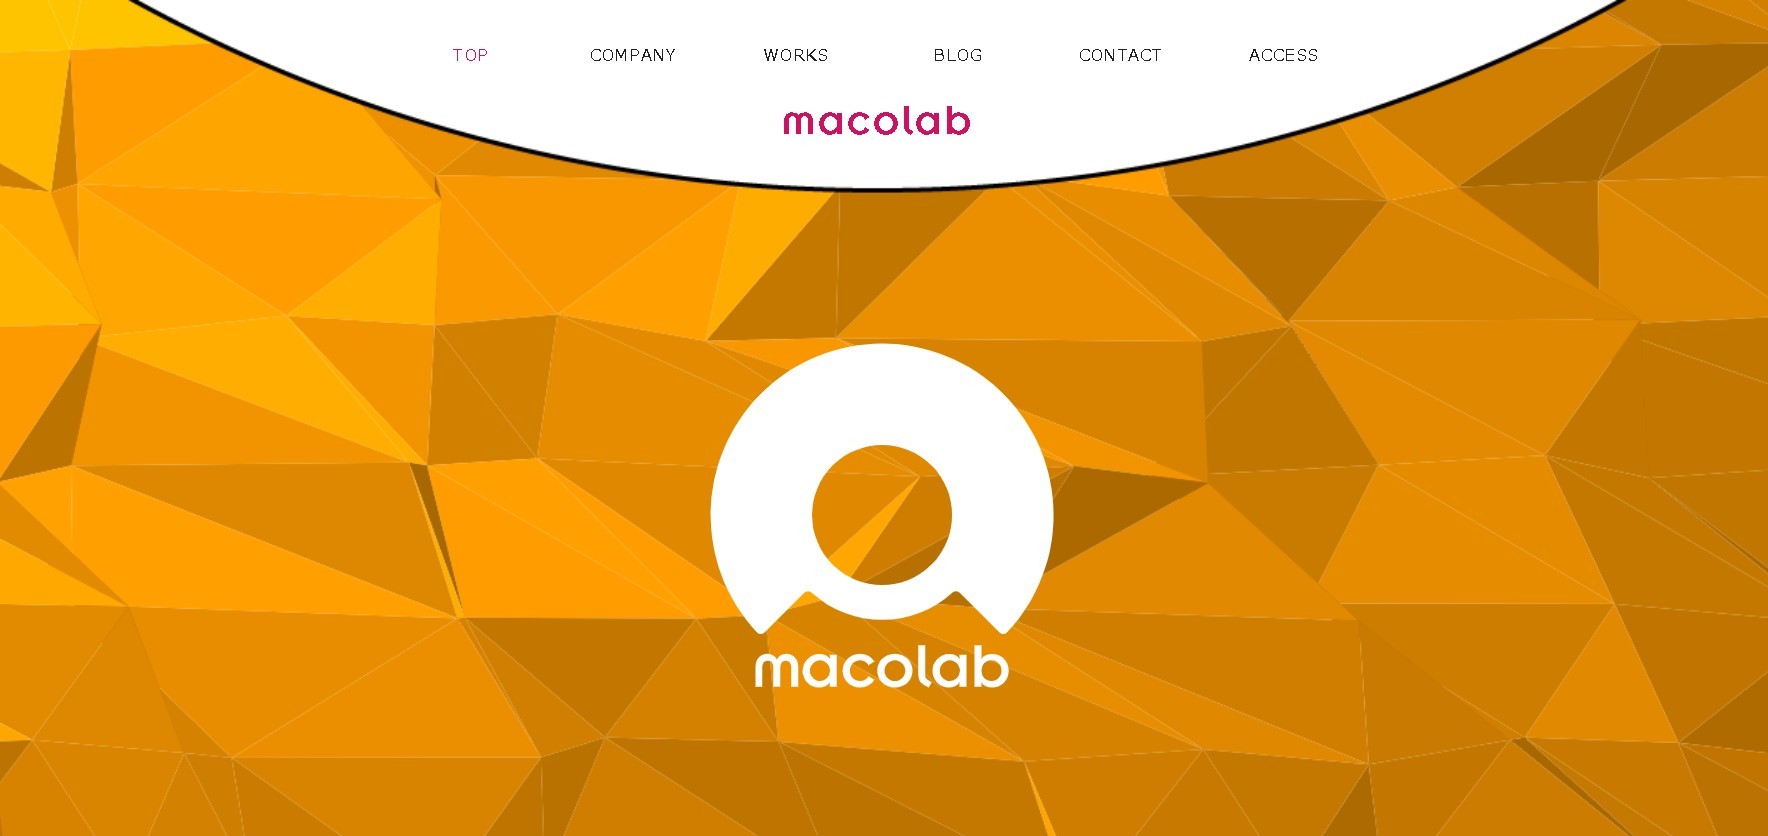 株式会社CoLabのmacolabサービス